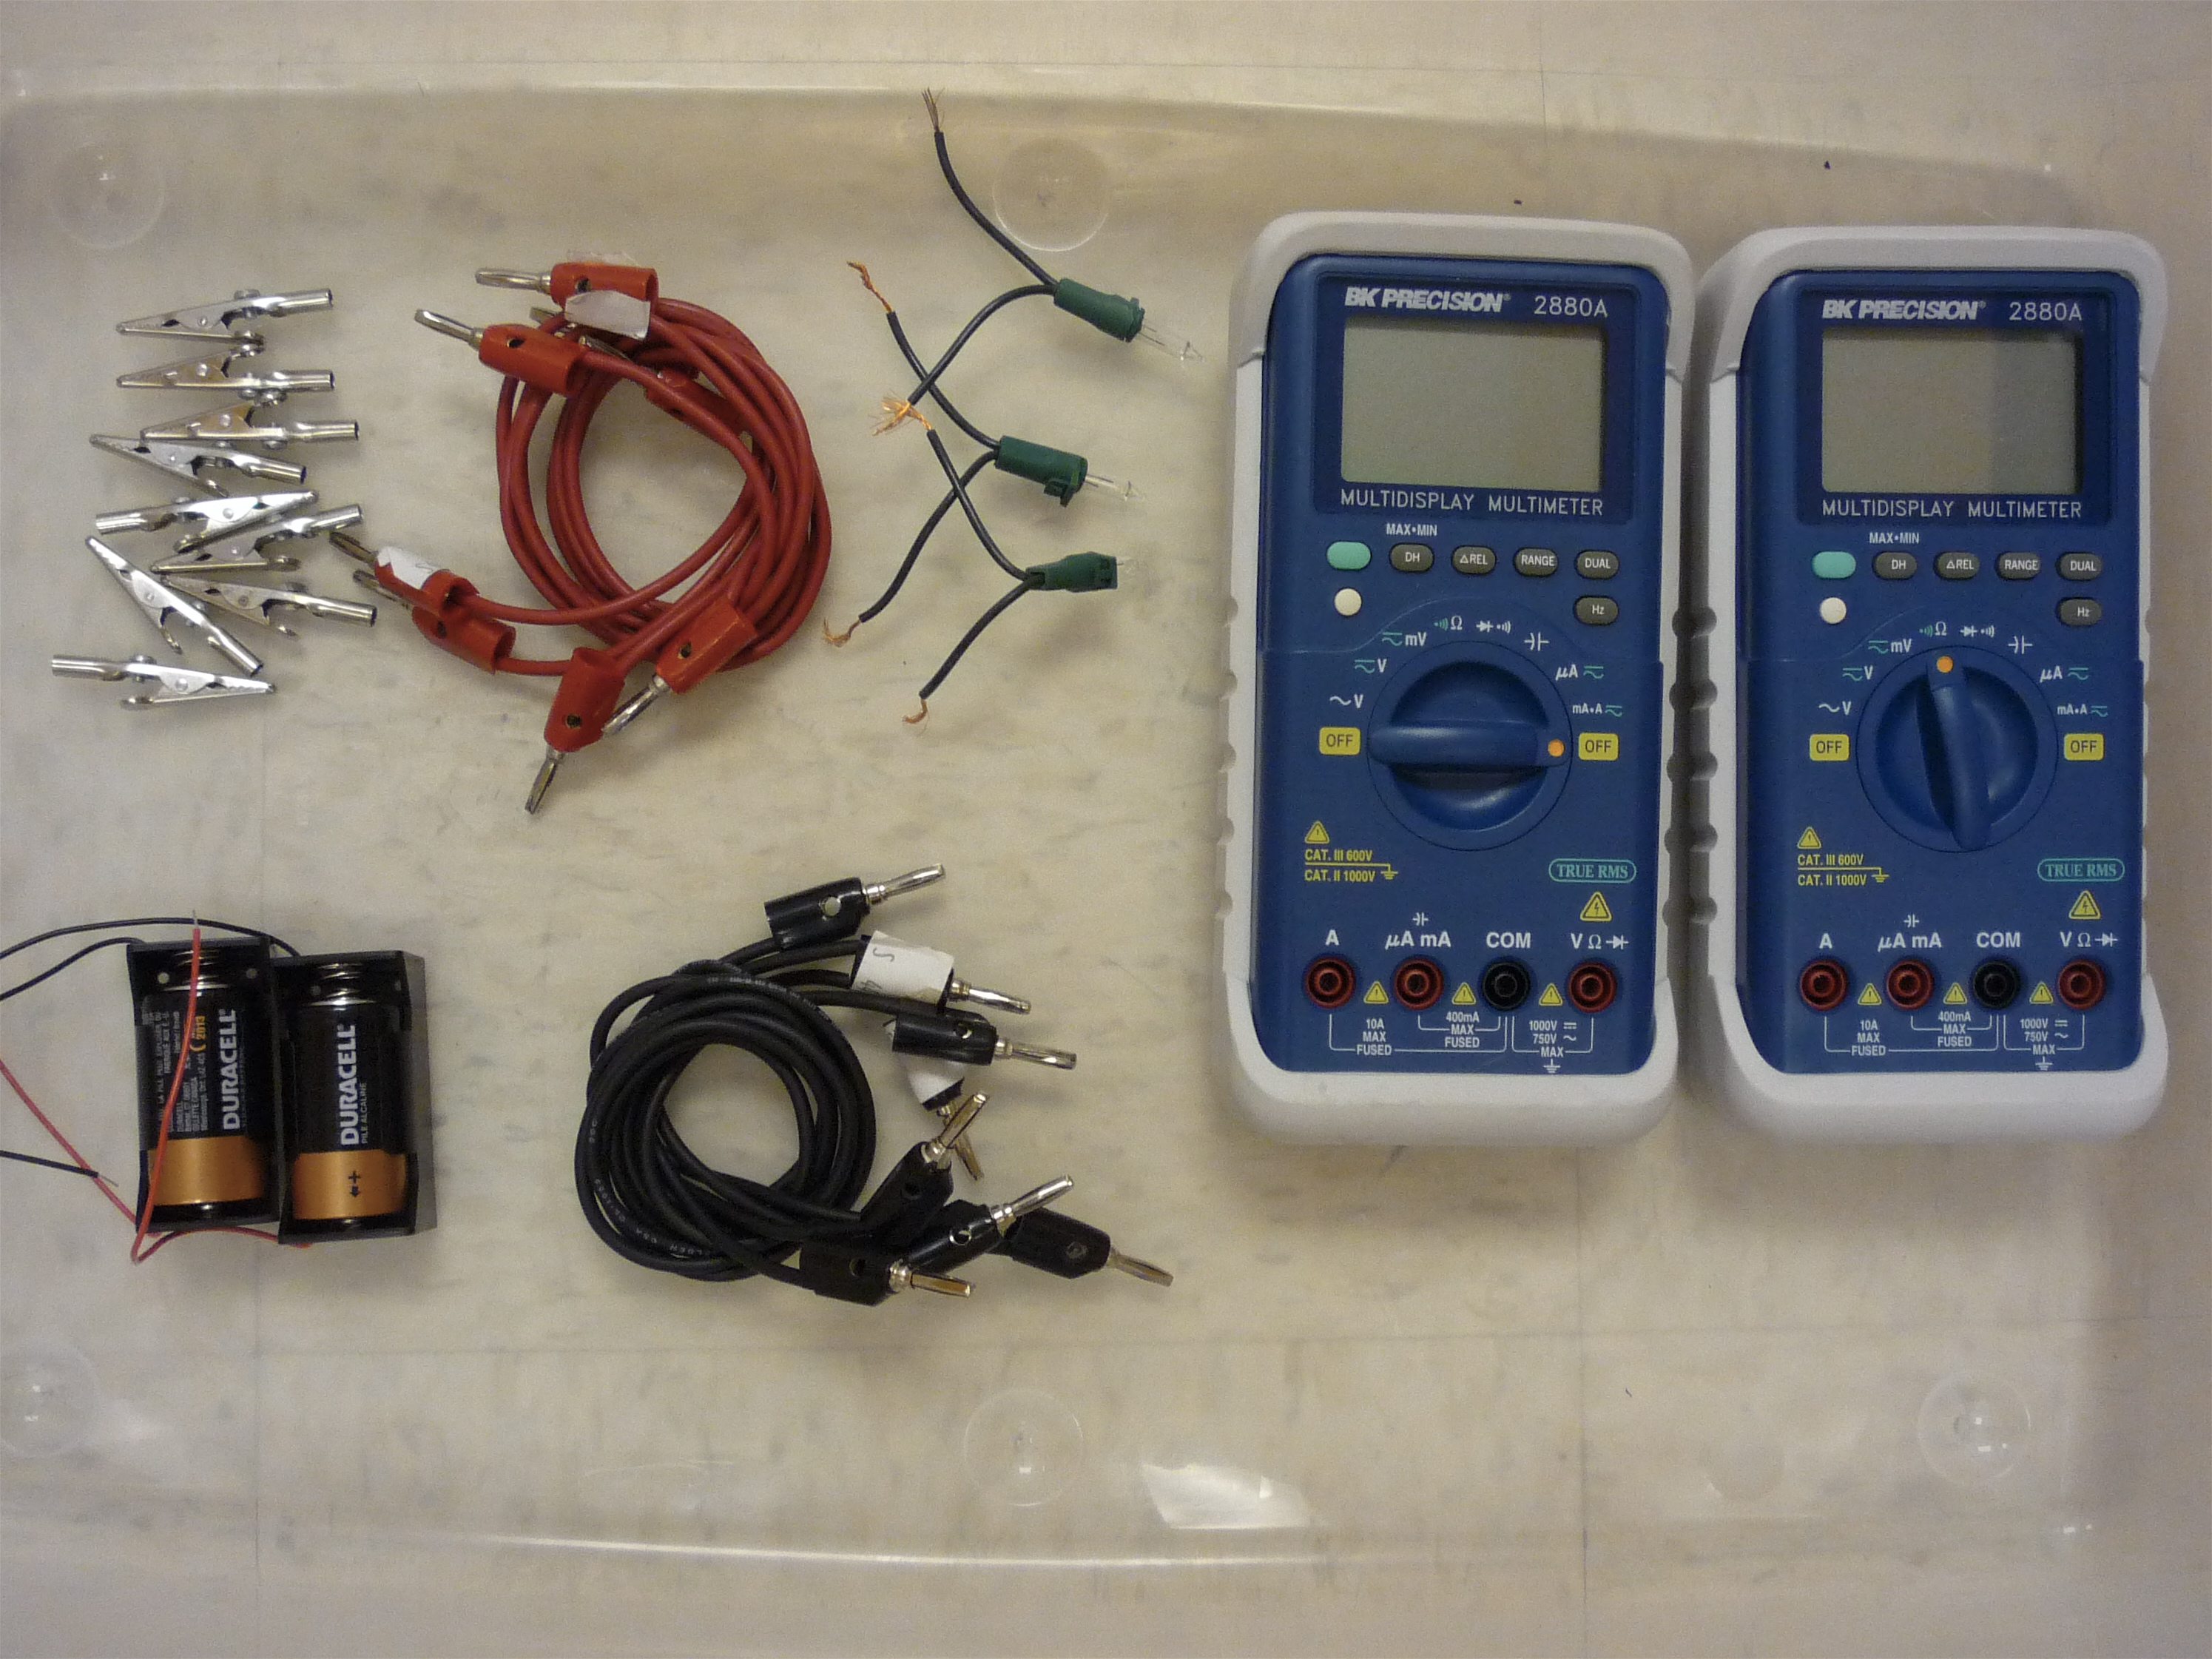 Circuit meacurement kit